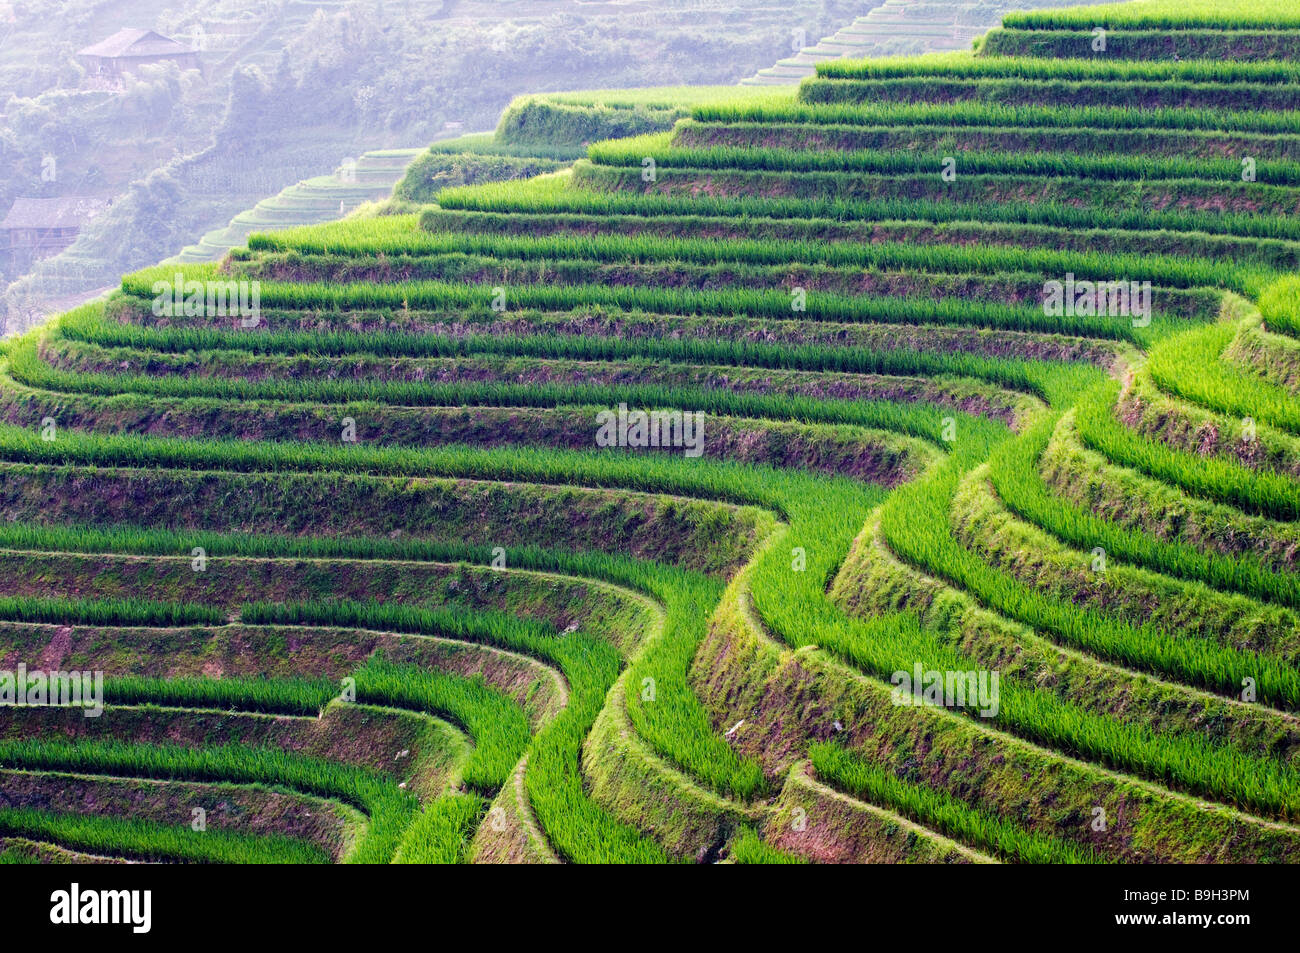 Cina, provincia di Guangxi, Longsheng Dragon's Backbone terrazze di riso, vicino a Guilin Foto Stock